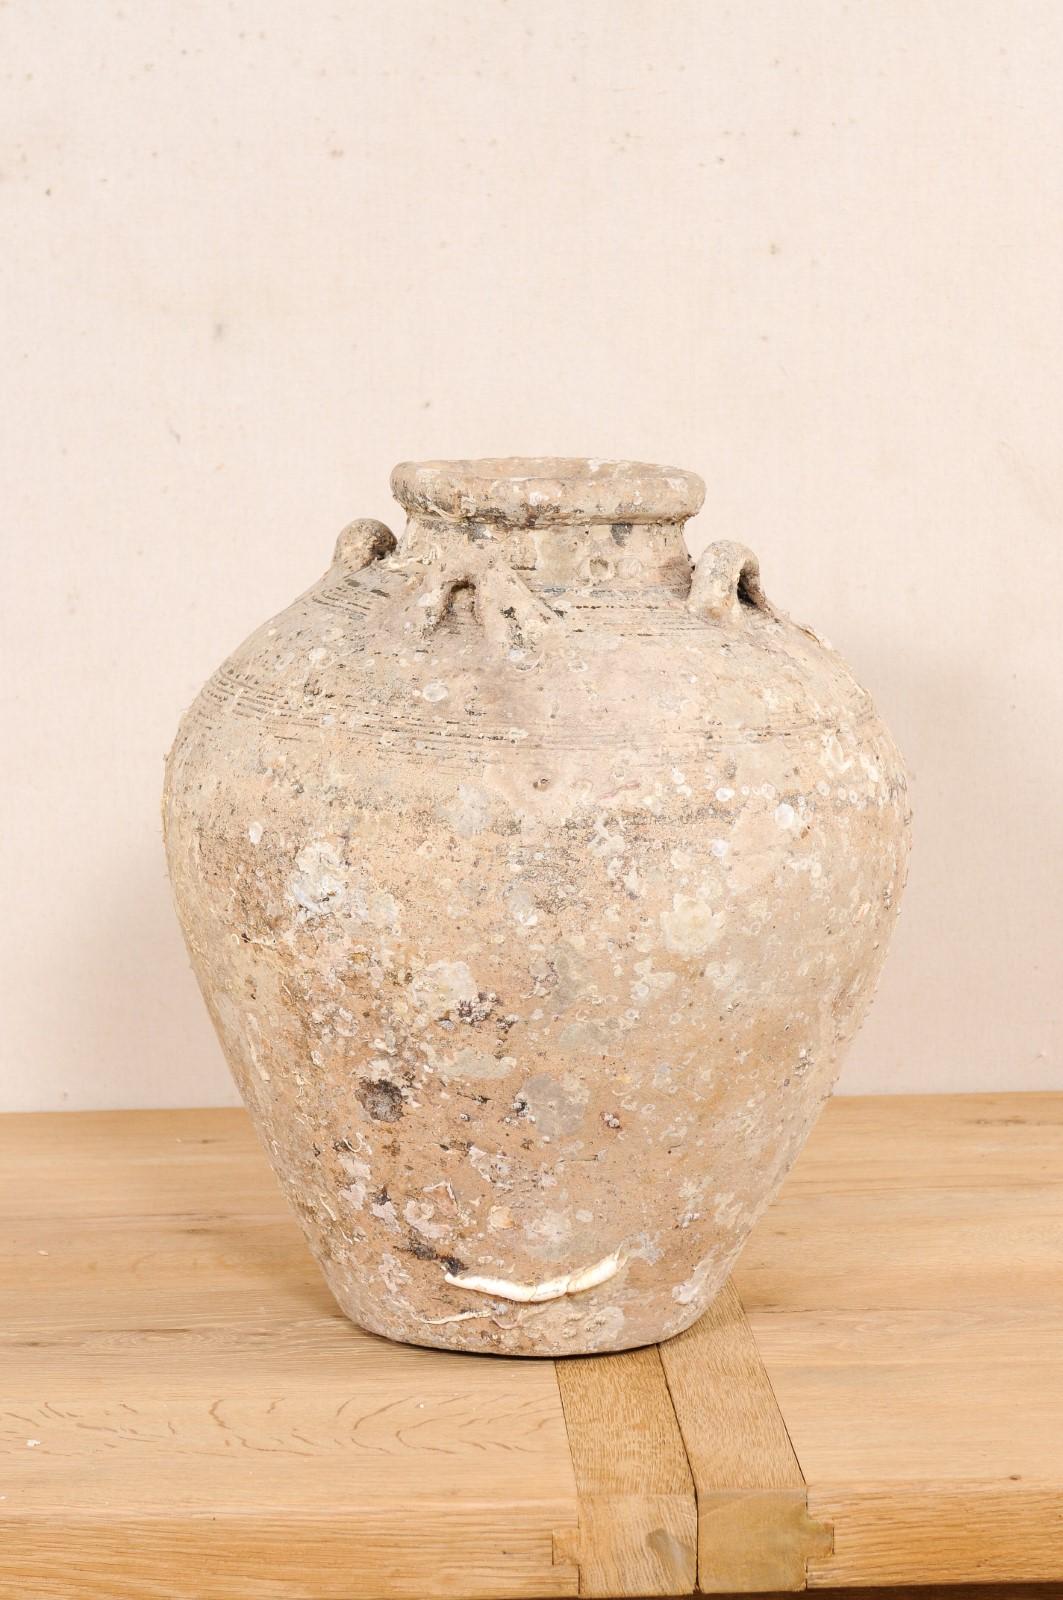 Dieses Keramikgefäß aus Thailand, ca. Anfang bis Mitte 1500, ist ein hervorragendes Exemplar eines geborgenen Keramikgefäßes aus einem Schiffswrack aus der Ming-Zeit. Dieses antike Gefäß aus Thailand ist etwas mehr als 20 Zoll hoch und hat einen